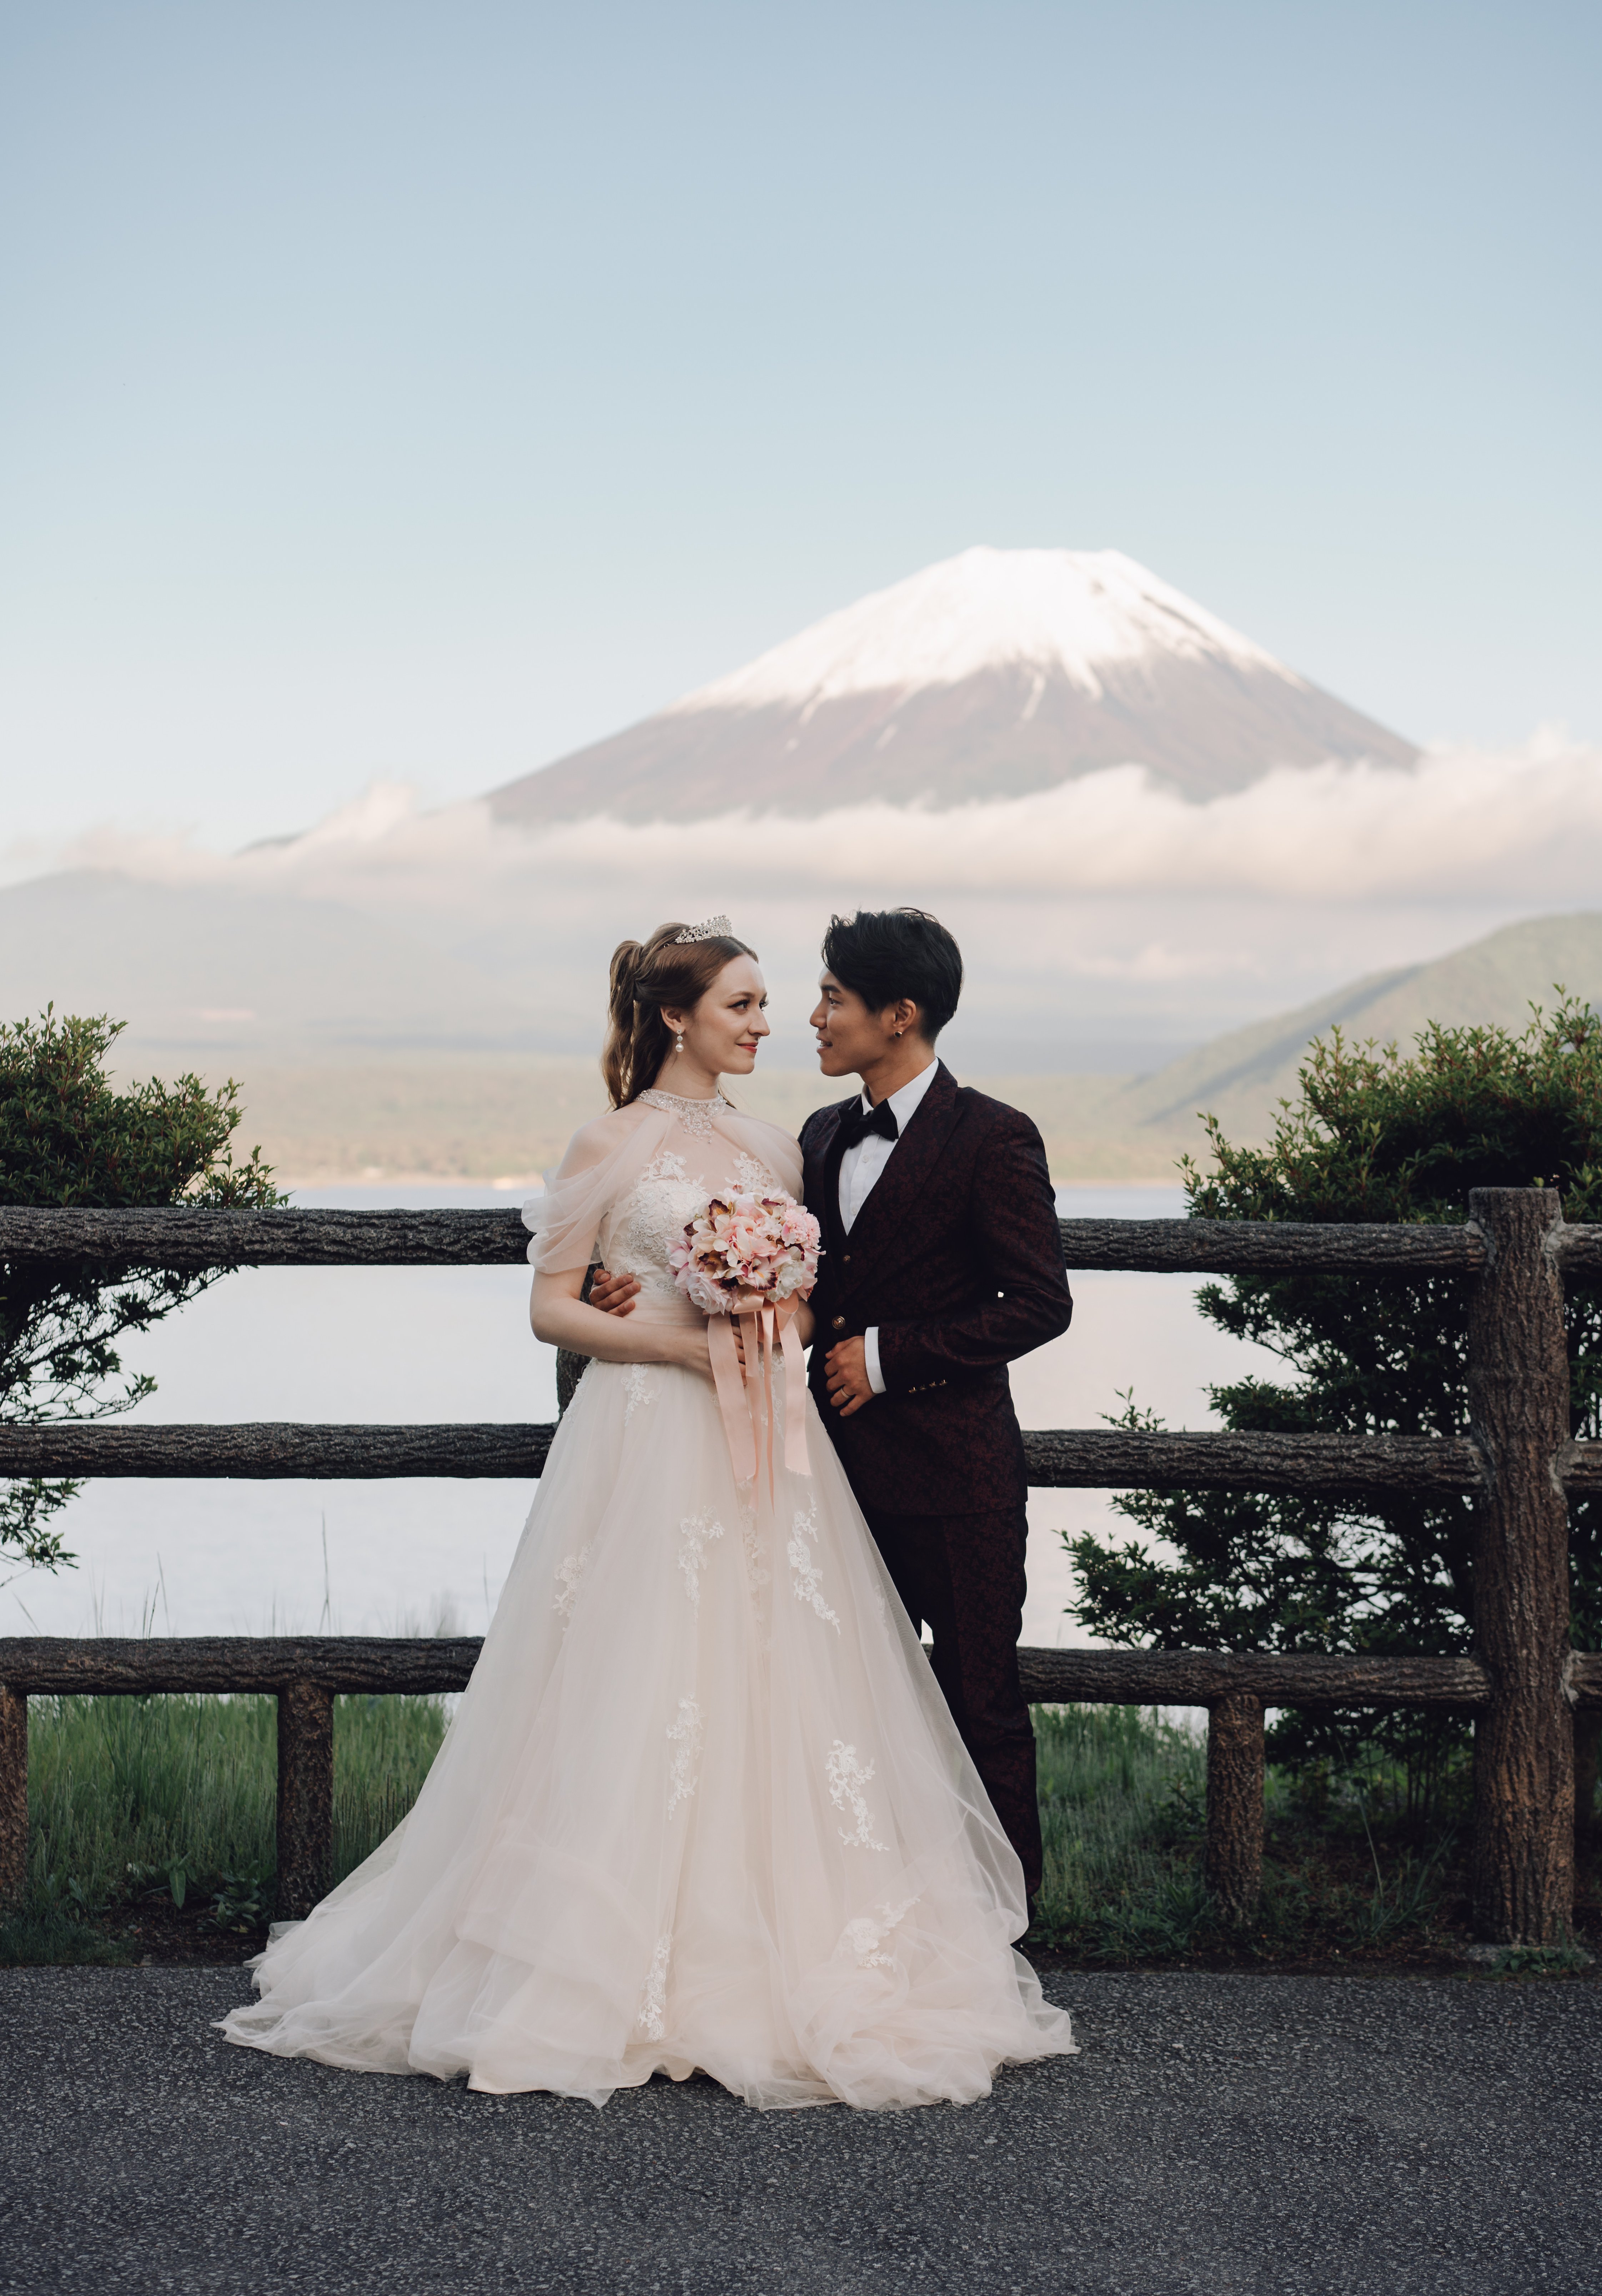 Tokyo Kimono Photoshoot and Prewedding Photoshoot At Makaino Farm & Saiko Lake with Mount Fuji